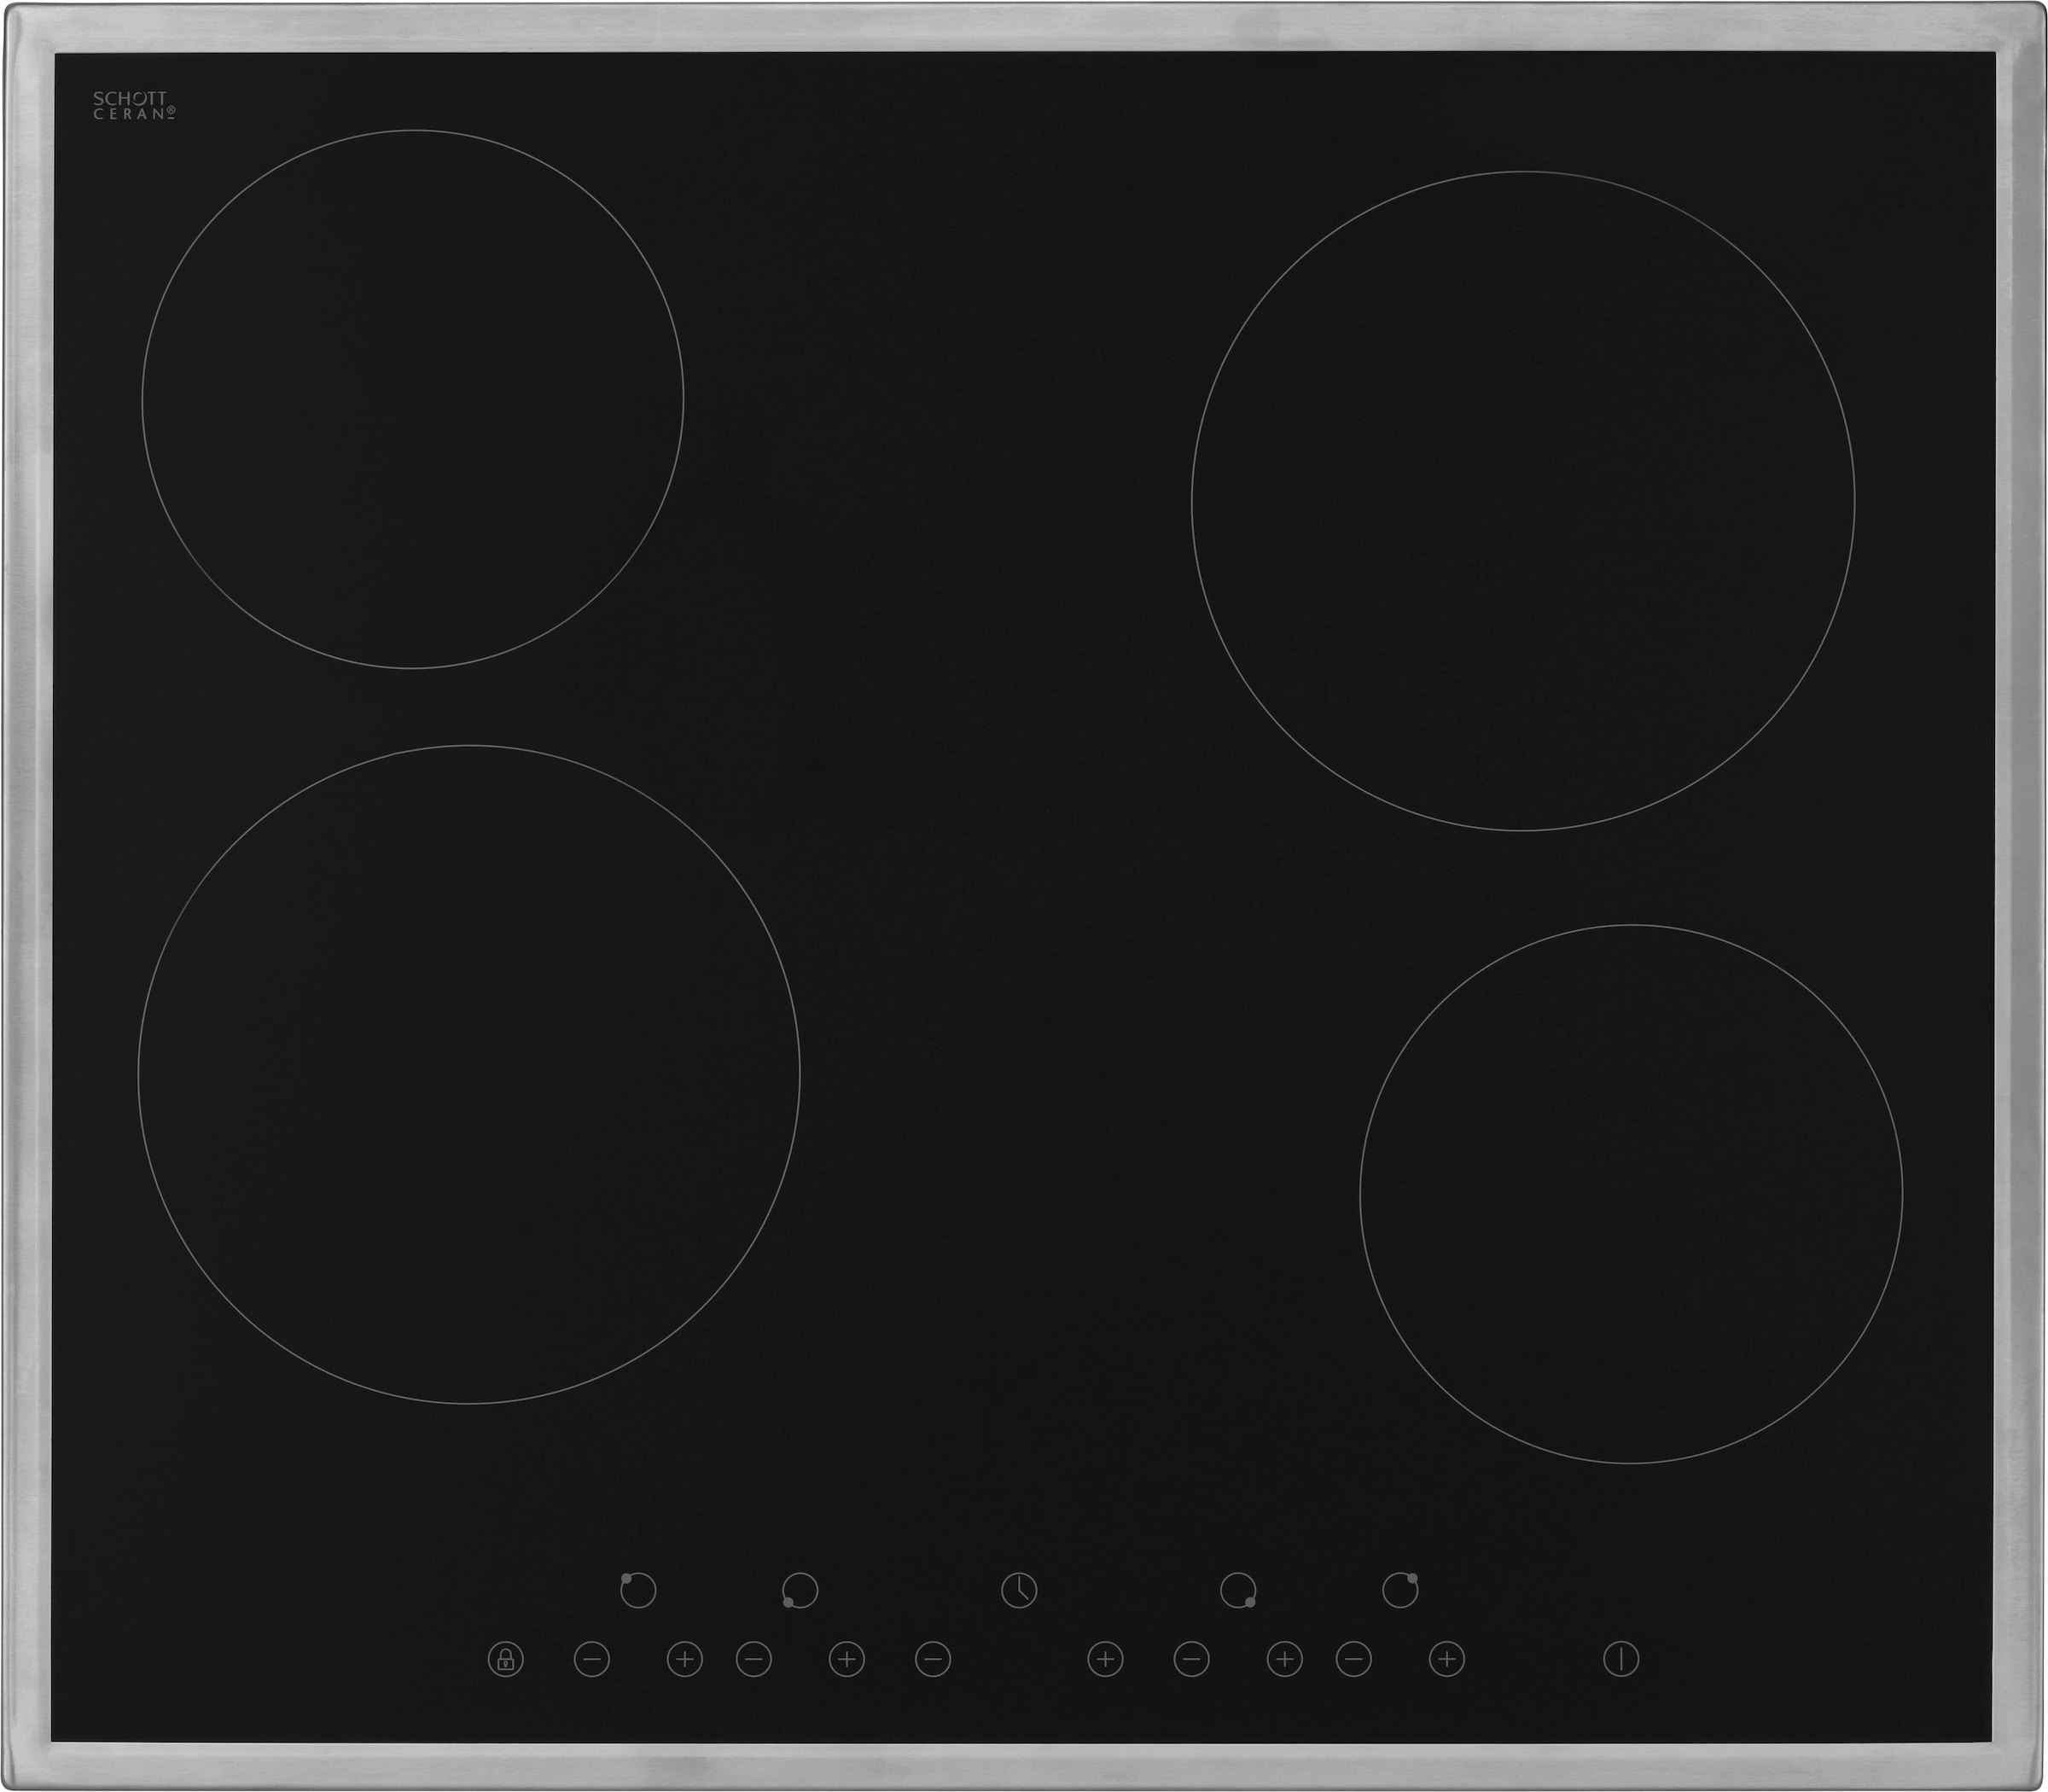 HELD MÖBEL Küchenzeile »Tinnum«, mit E-Geräten, Breite 390 cm